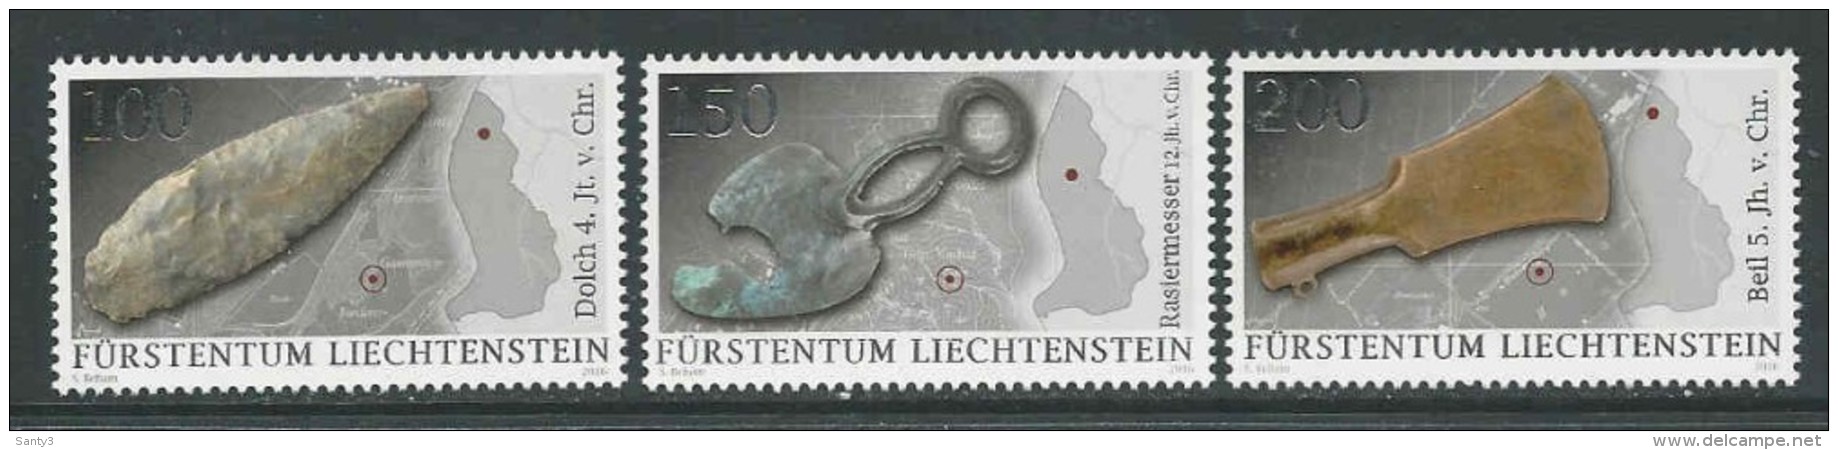 Liechtenstein, Mi Jaar 2016, Reeks,  Postfris (MNH) Zie Scan - Unused Stamps